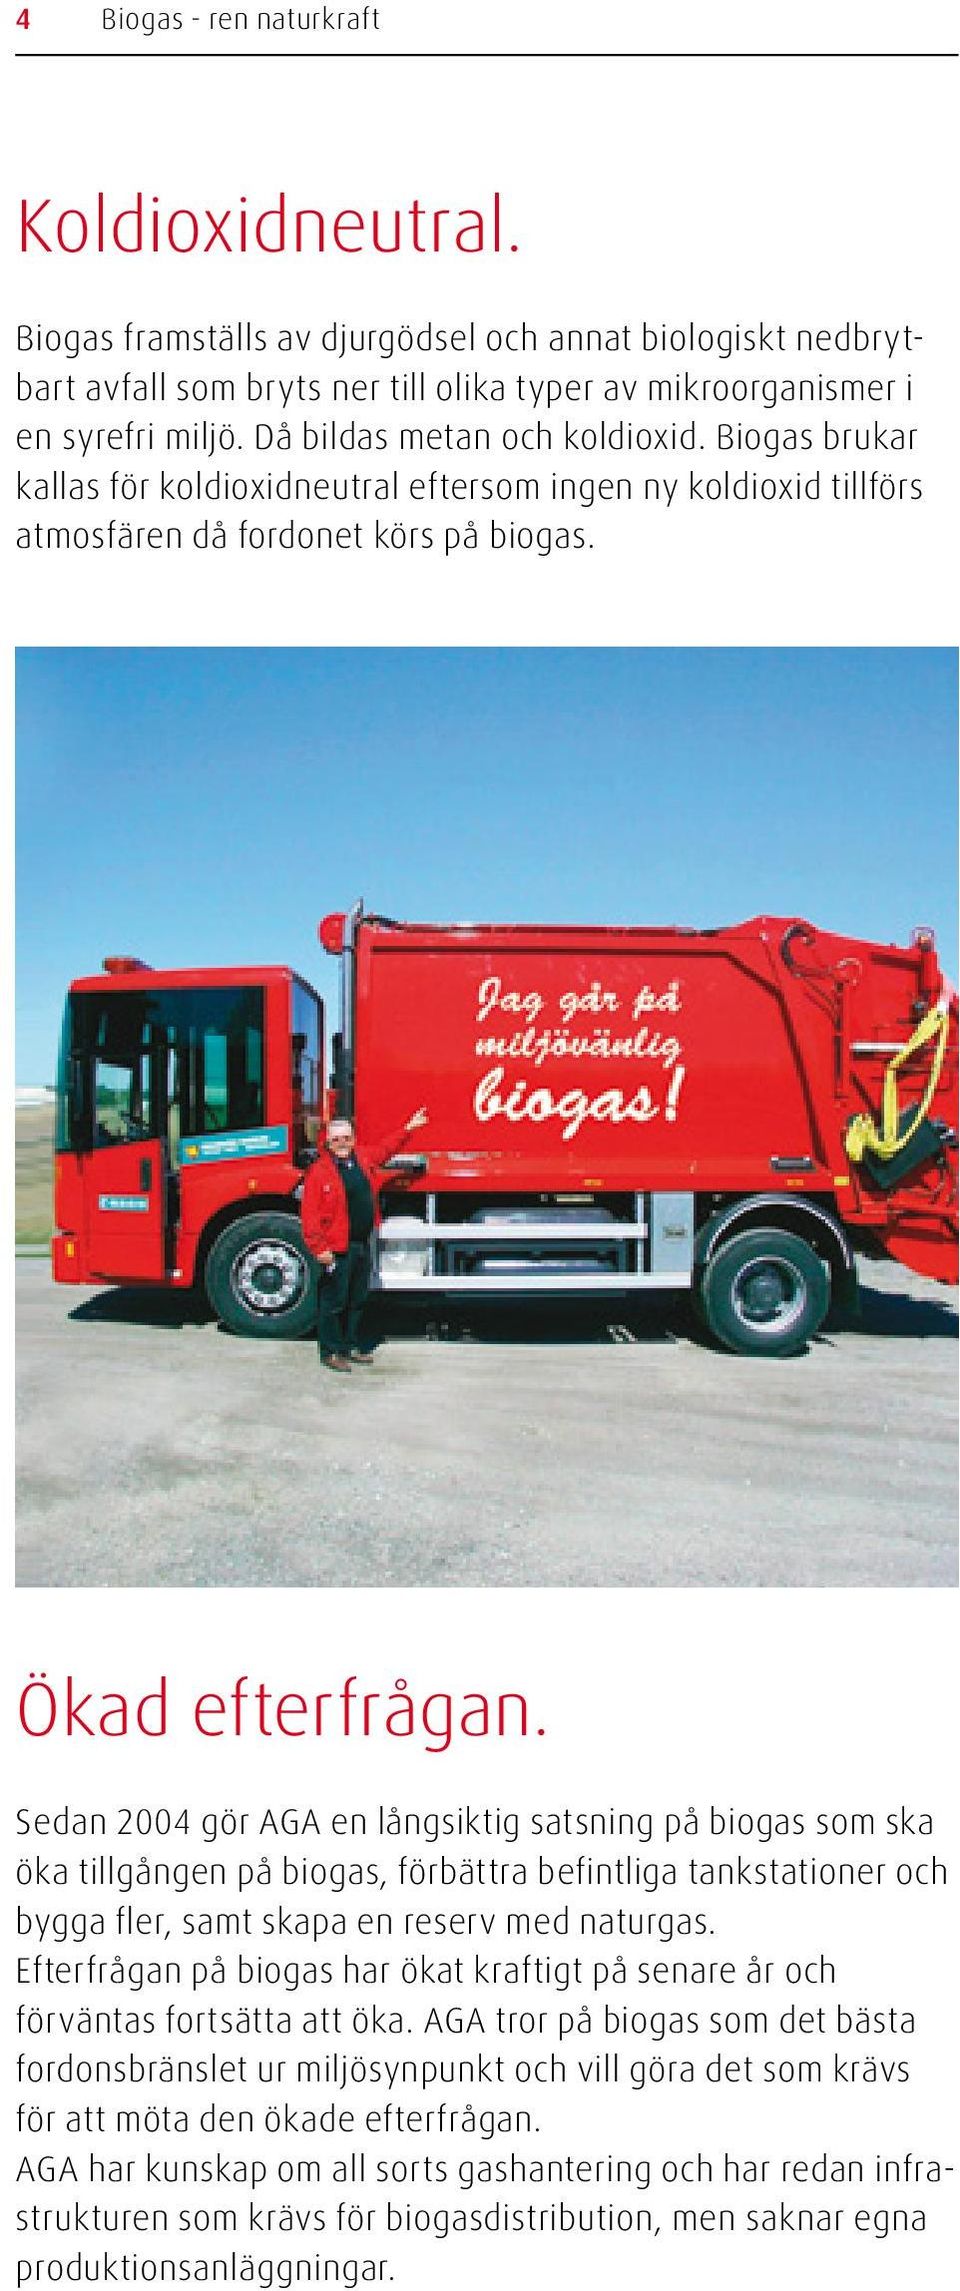 Sedan 2004 gör AGA en långsiktig satsning på biogas som ska öka tillgången på biogas, förbättra befintliga tankstationer och bygga fler, samt skapa en reserv med naturgas.